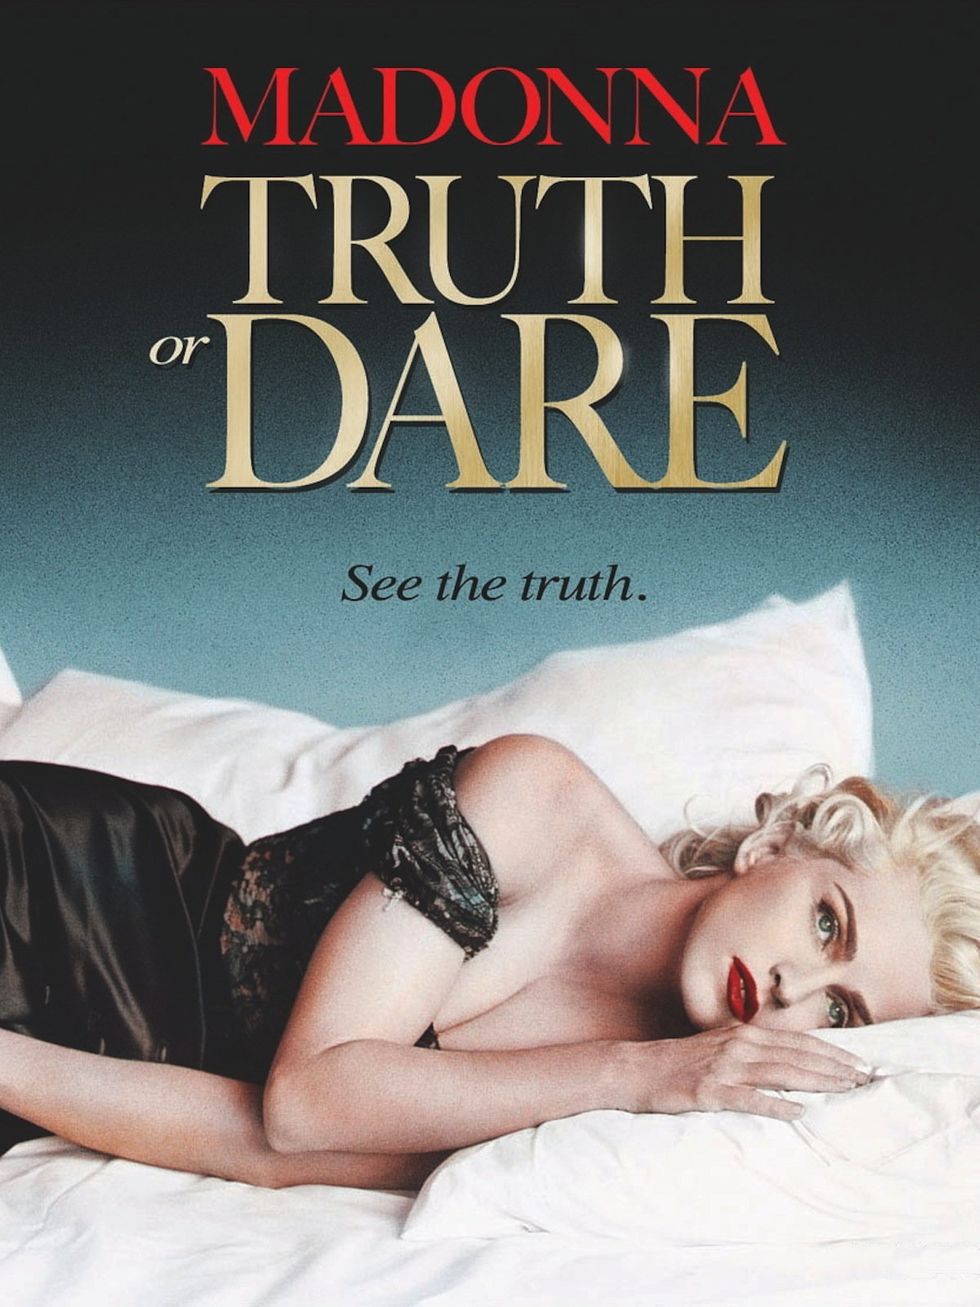 "Madonna: Truth Or Dare"